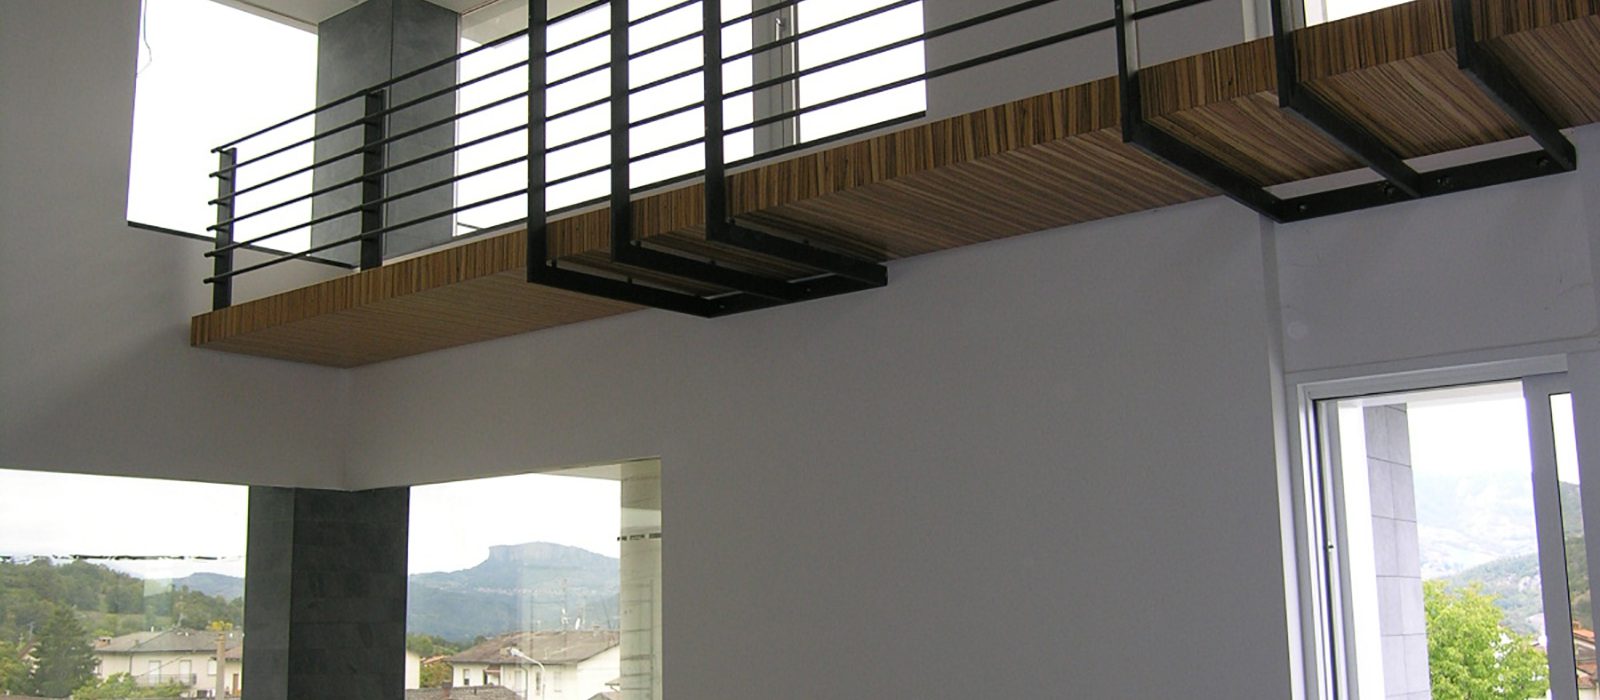 15_progetto_residenziale_giuseppe_passaro_architetto_cavola_residenziale